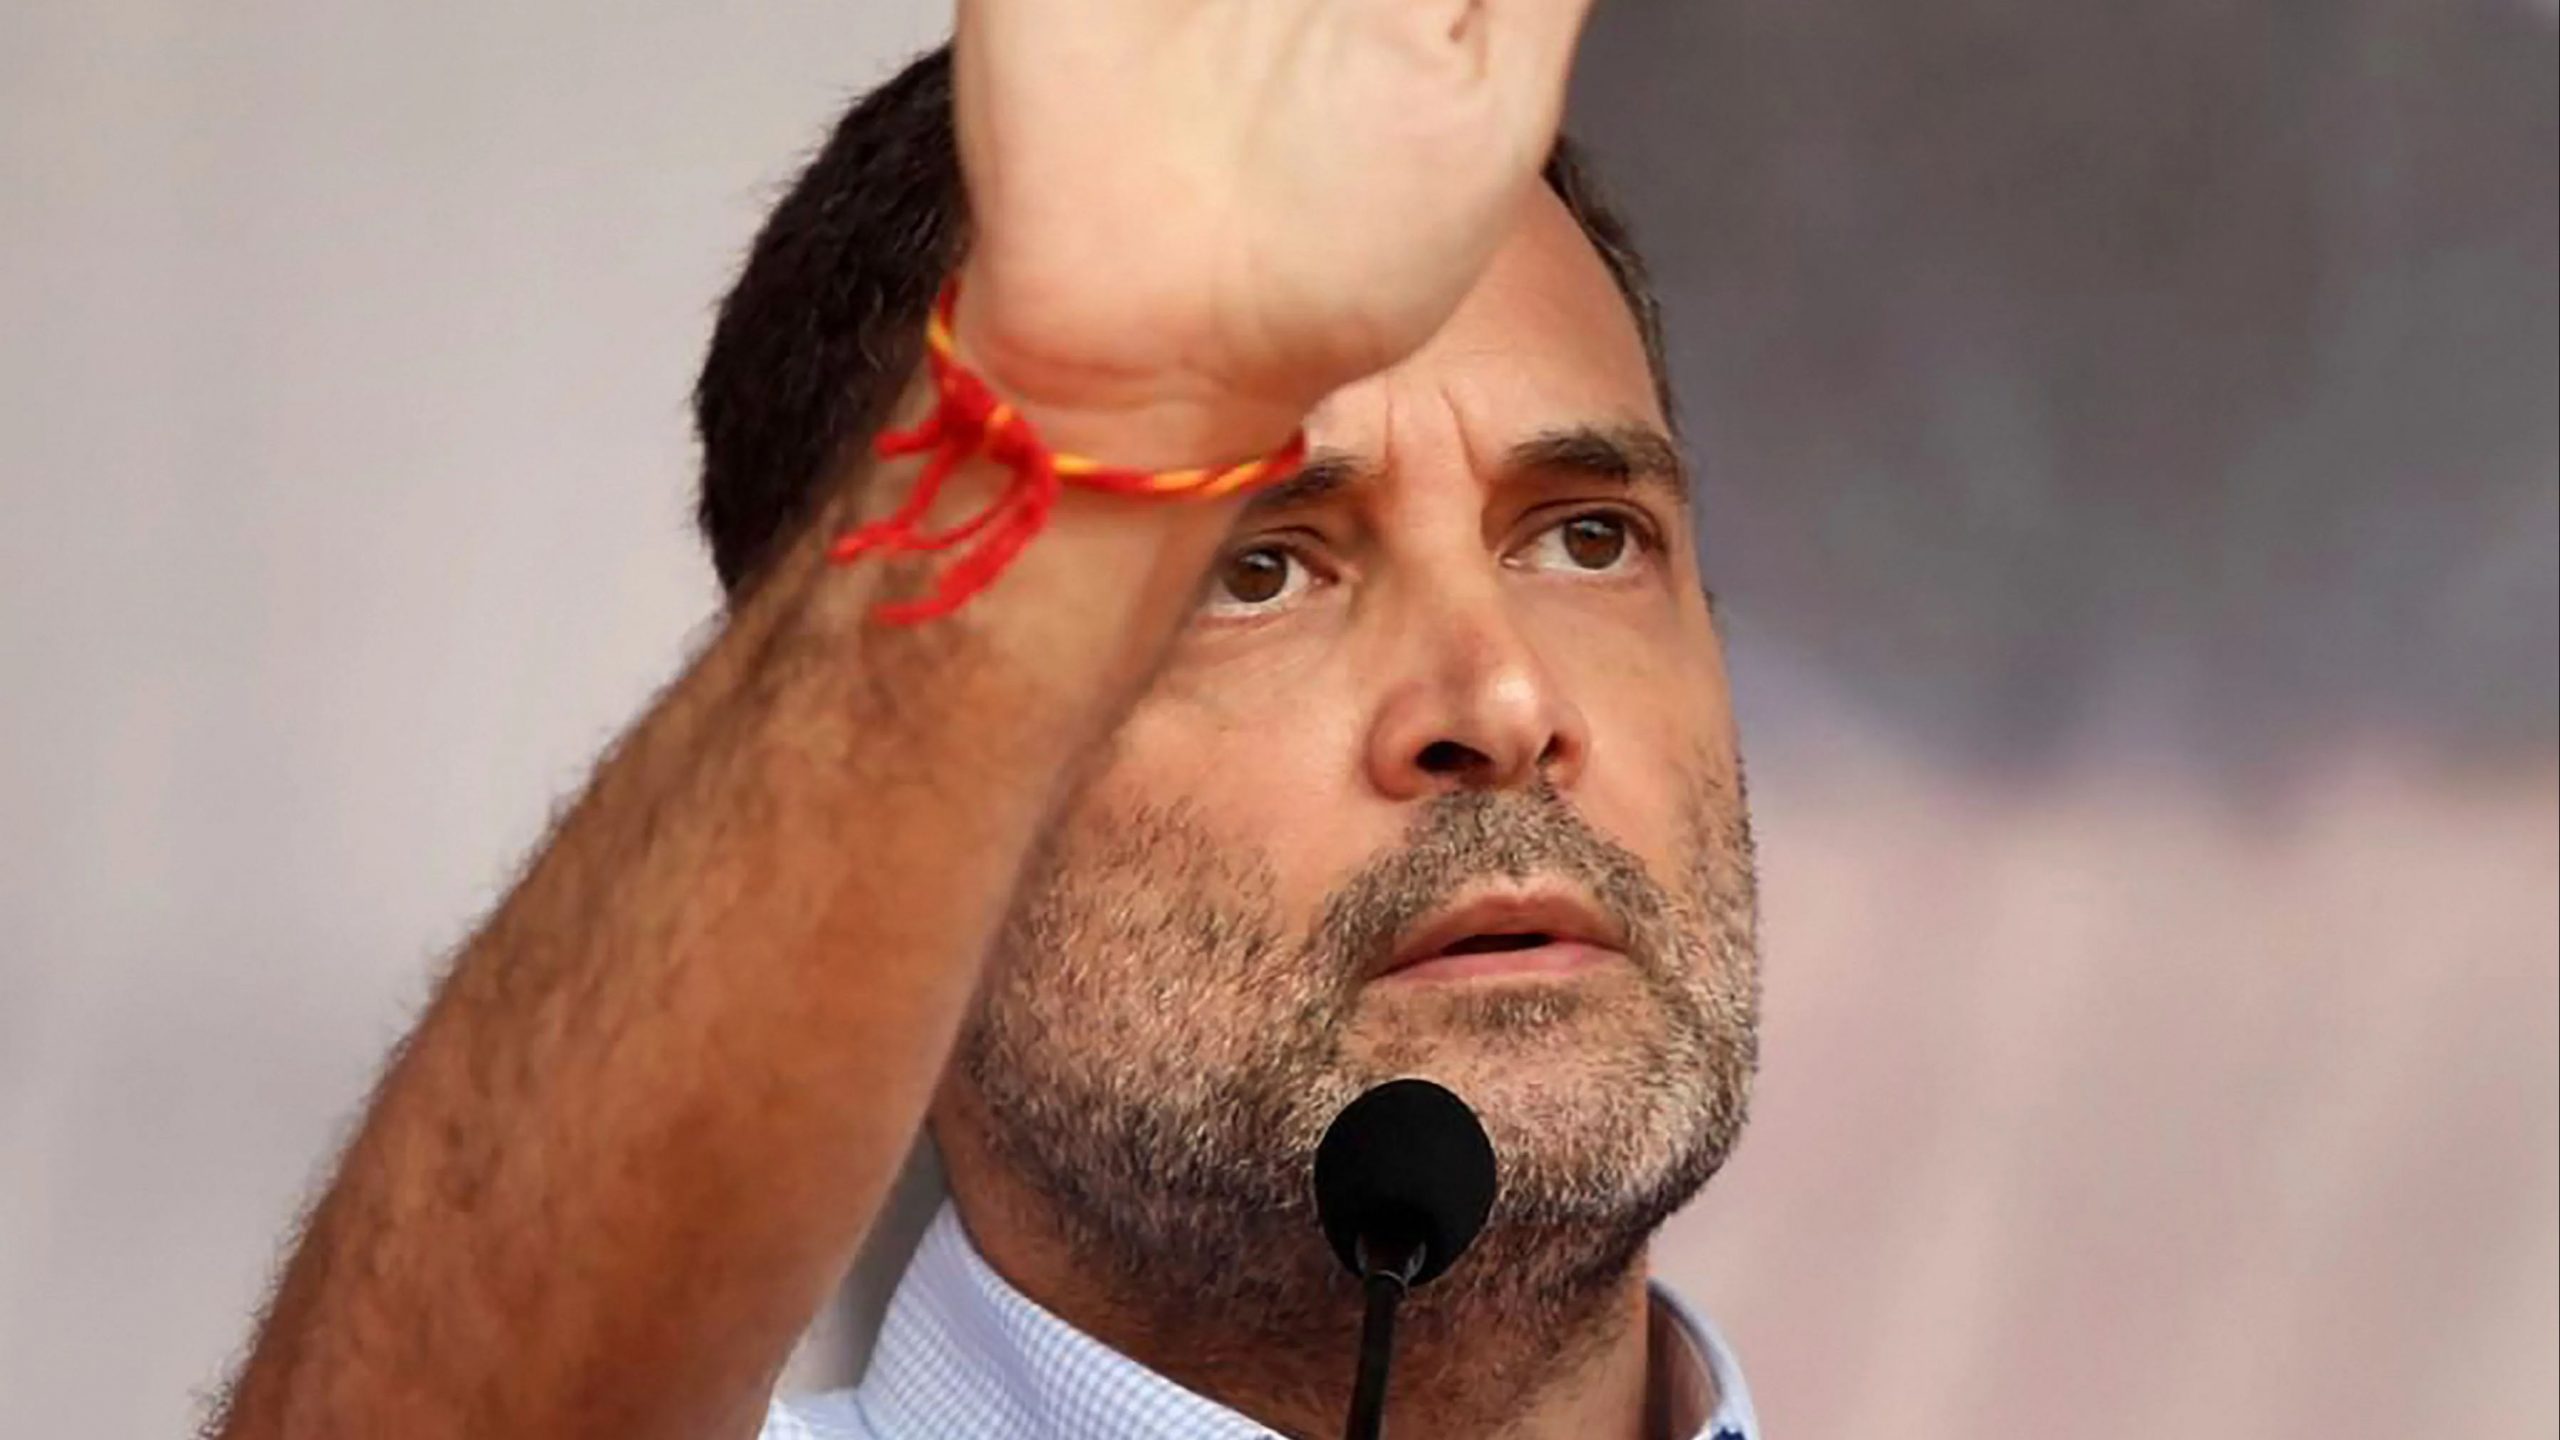 Congress leader lauds Rahul Gandhi’s ‘bold leadership’ to solve Punjab impasse